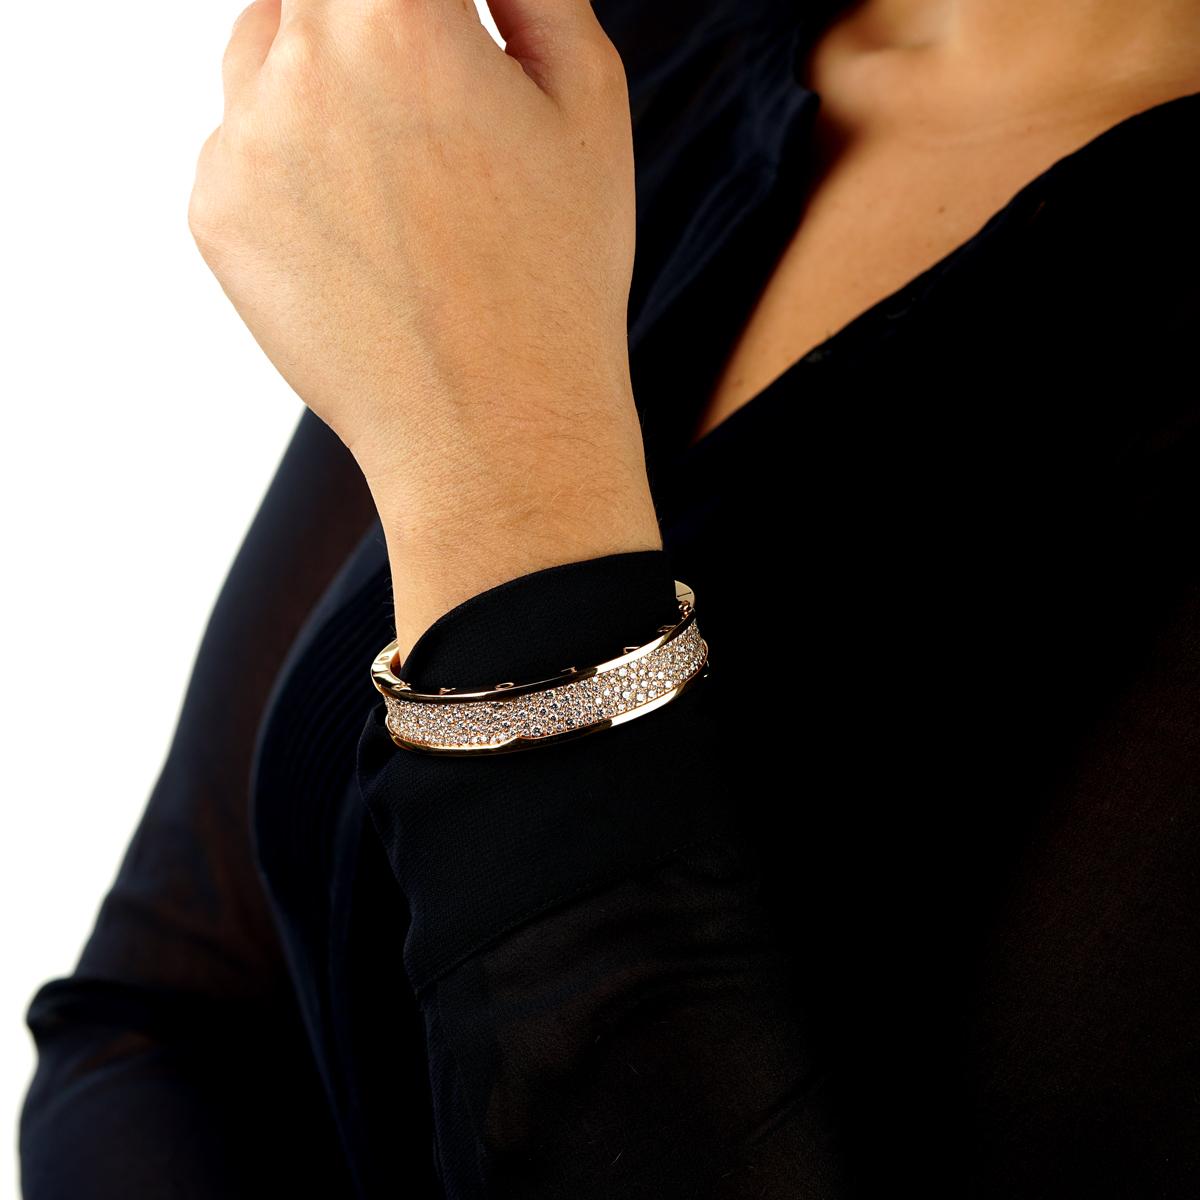 Un bracelet bangle Bulgari Bzero1 iconique orné de 9,52 ct de diamants ronds de taille brillante les plus fins. Le bracelet s'adapte aux poignets jusqu'à 6 1/2